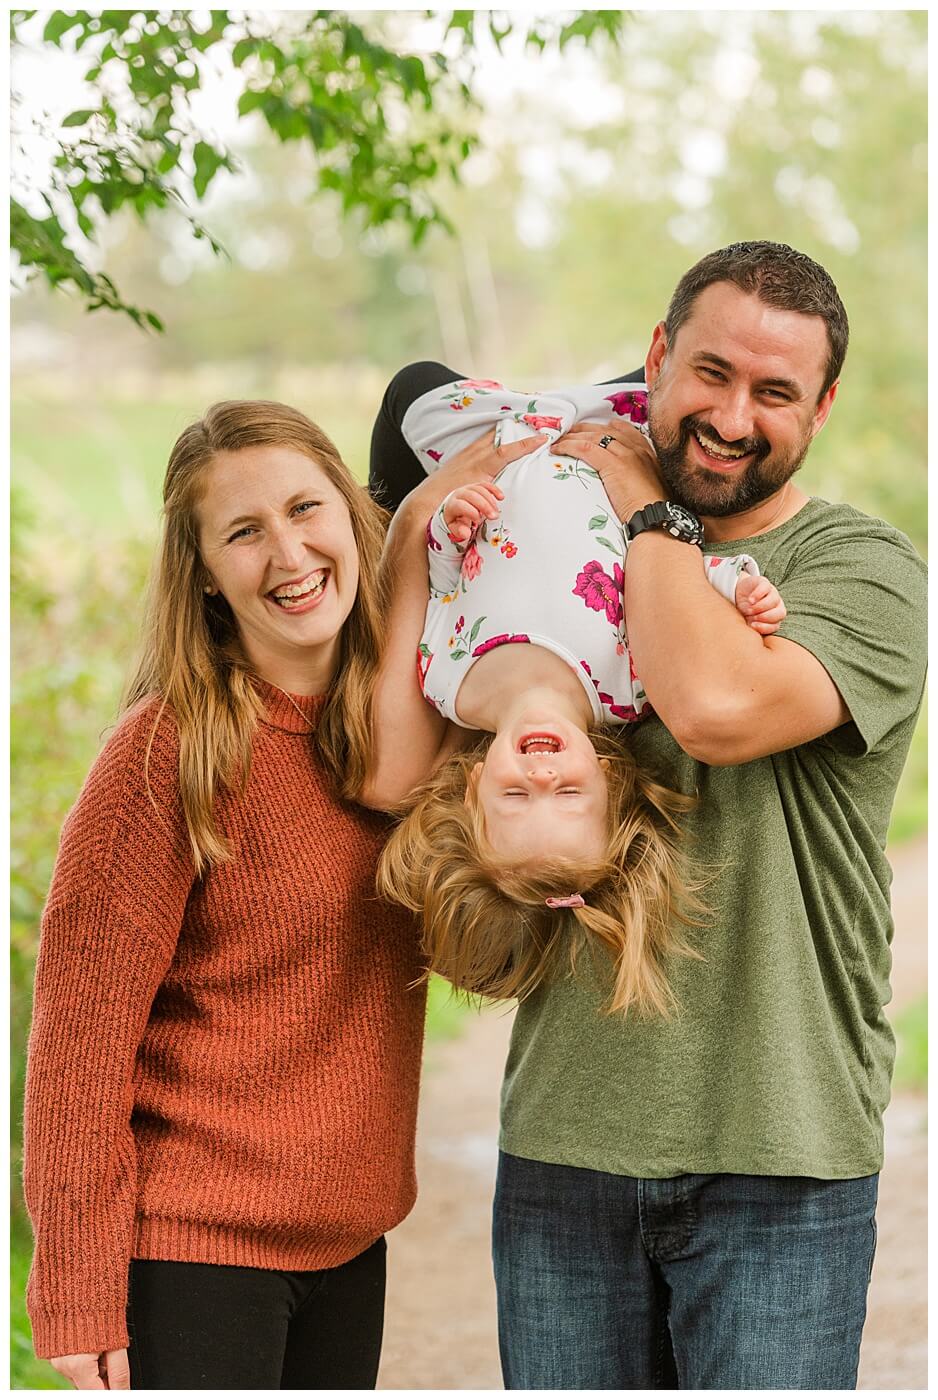 Eyre Family 2021 - AE Wilson Park - Family Photo Shoot - 12 - Little girl hangs upside down